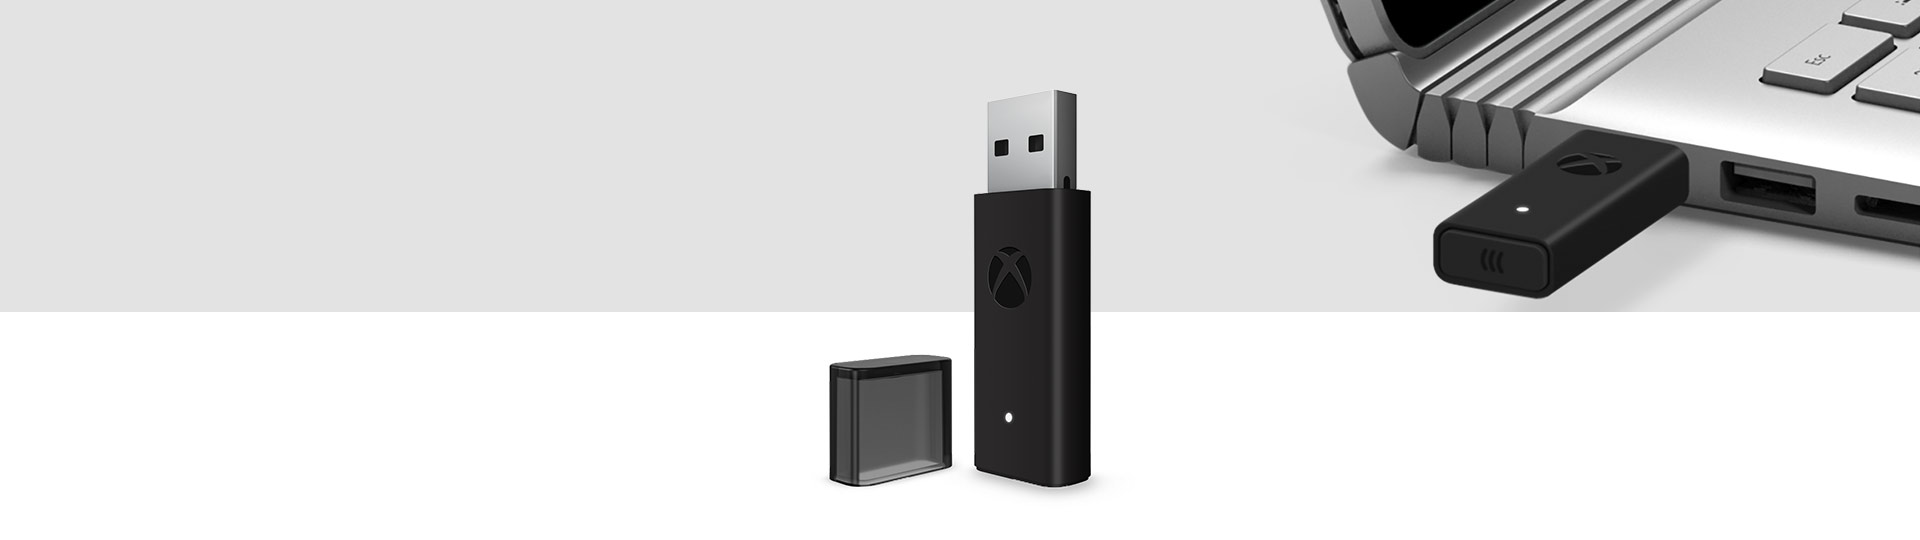 배경으로 Windows 10용 Xbox 무선 컨트롤러 어댑터와 Xbox 무선 어댑터가 노트북의 USB 포트에 연결되어 있는 모습